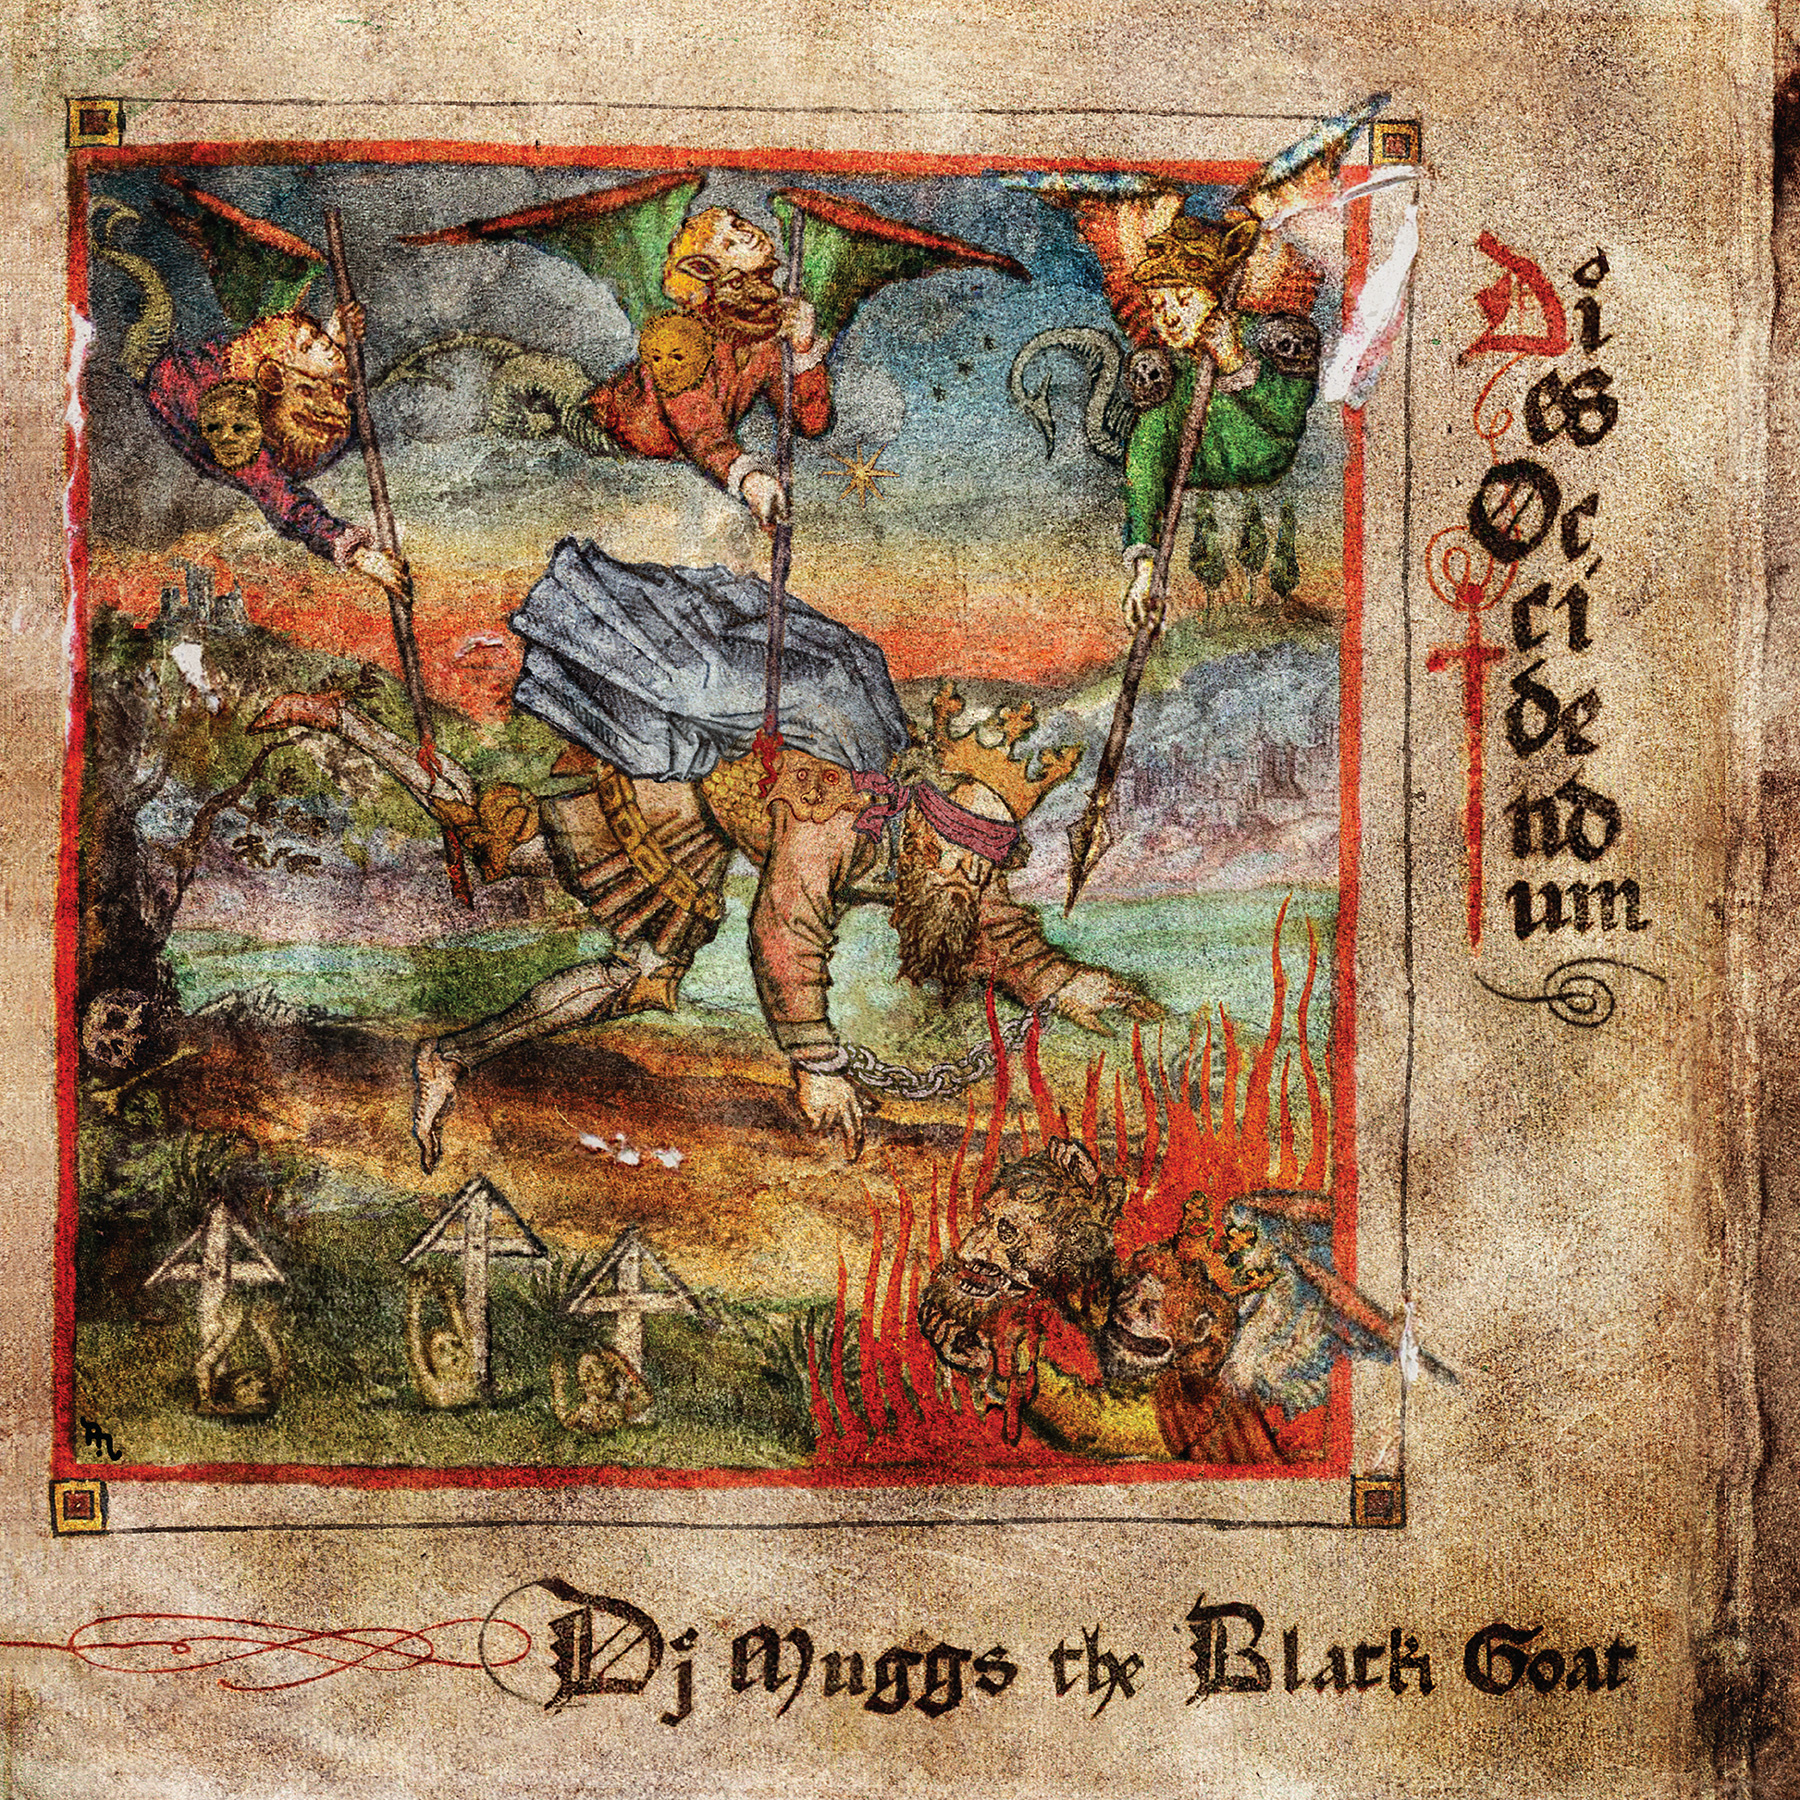 DJ Muggs the Black Goat - Dies Occidendum - CD